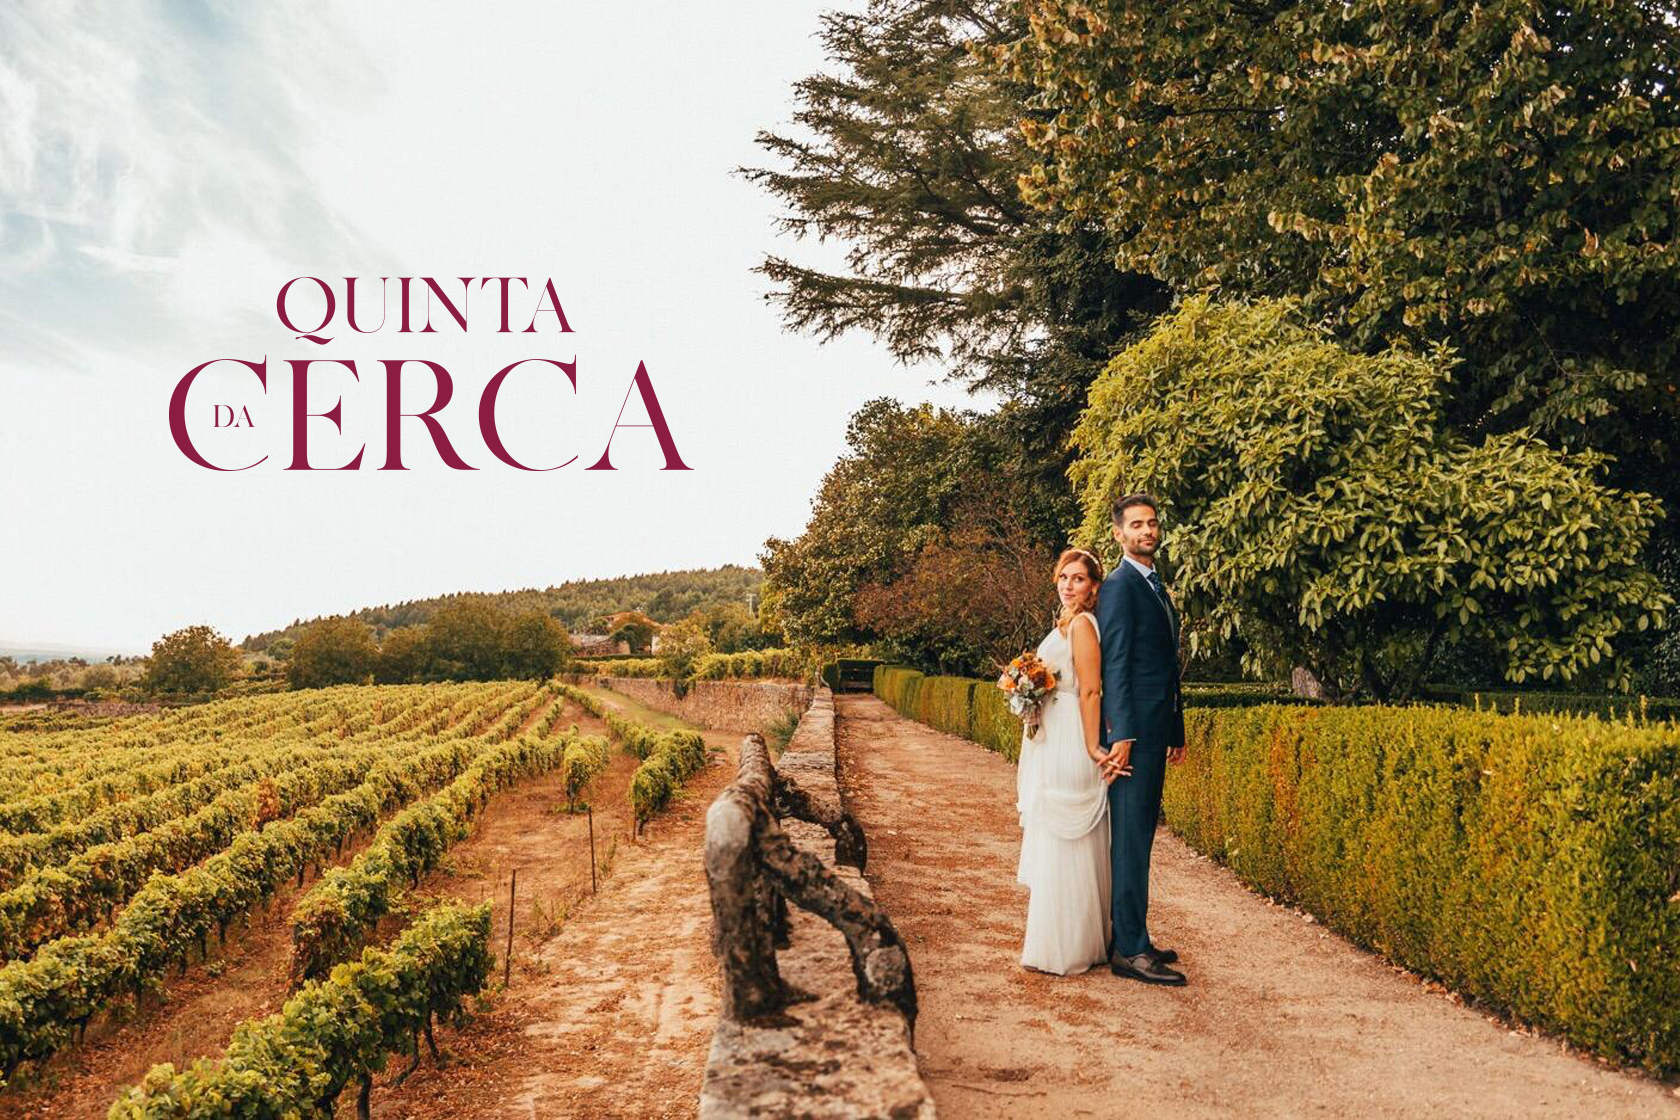 Fotografia de noivos, na Quinta da Cerca, com o logótipo criado pela empresa Marketing Home.